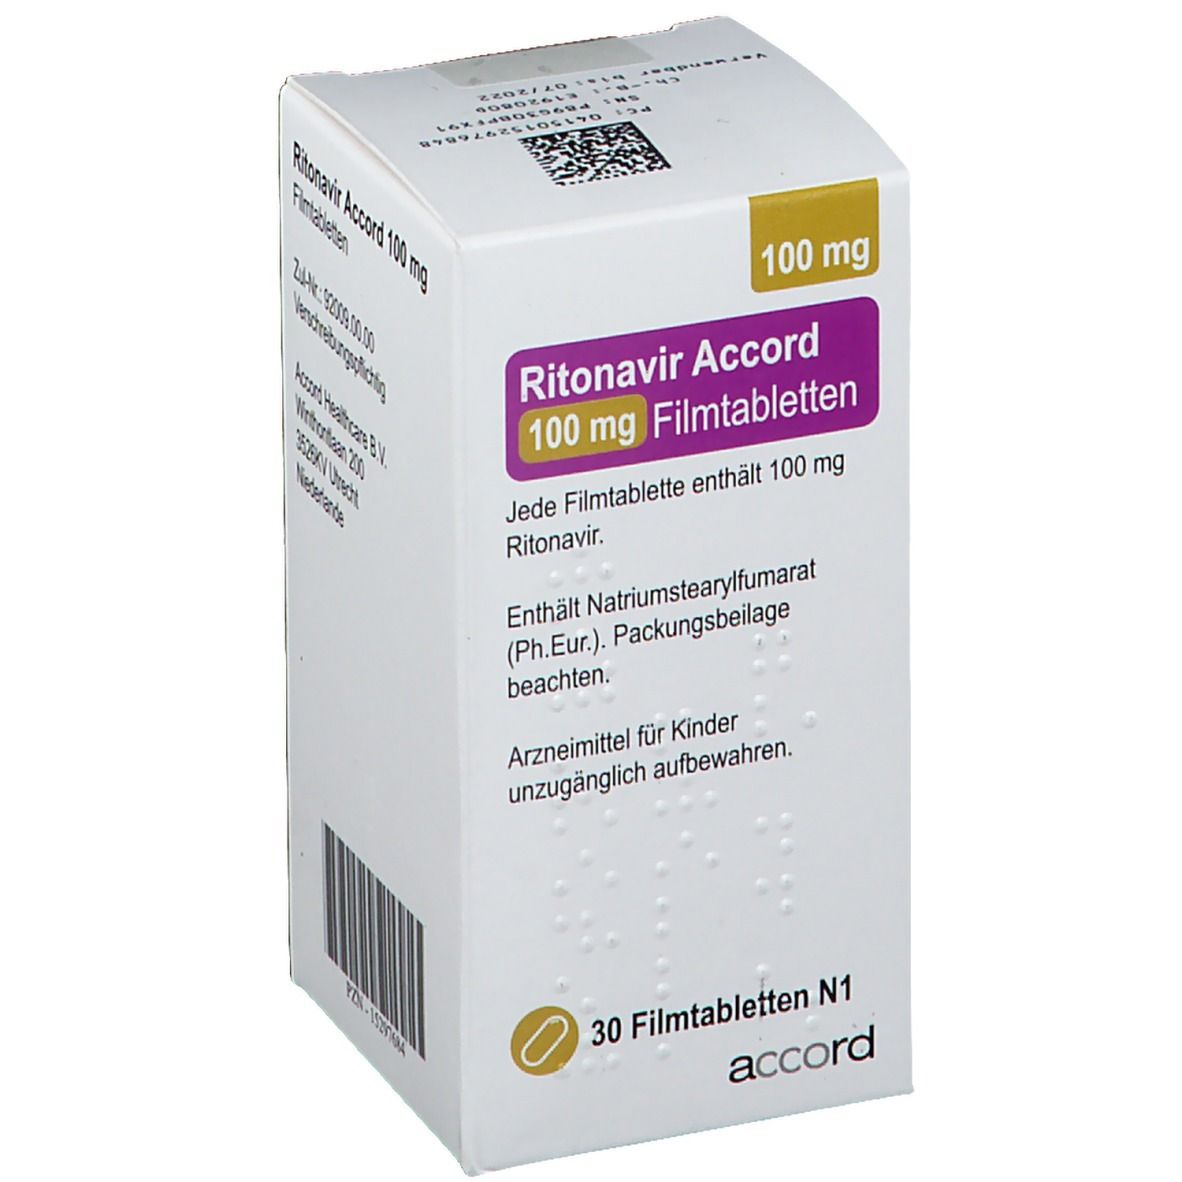 Ritonavir Accord 100 mg